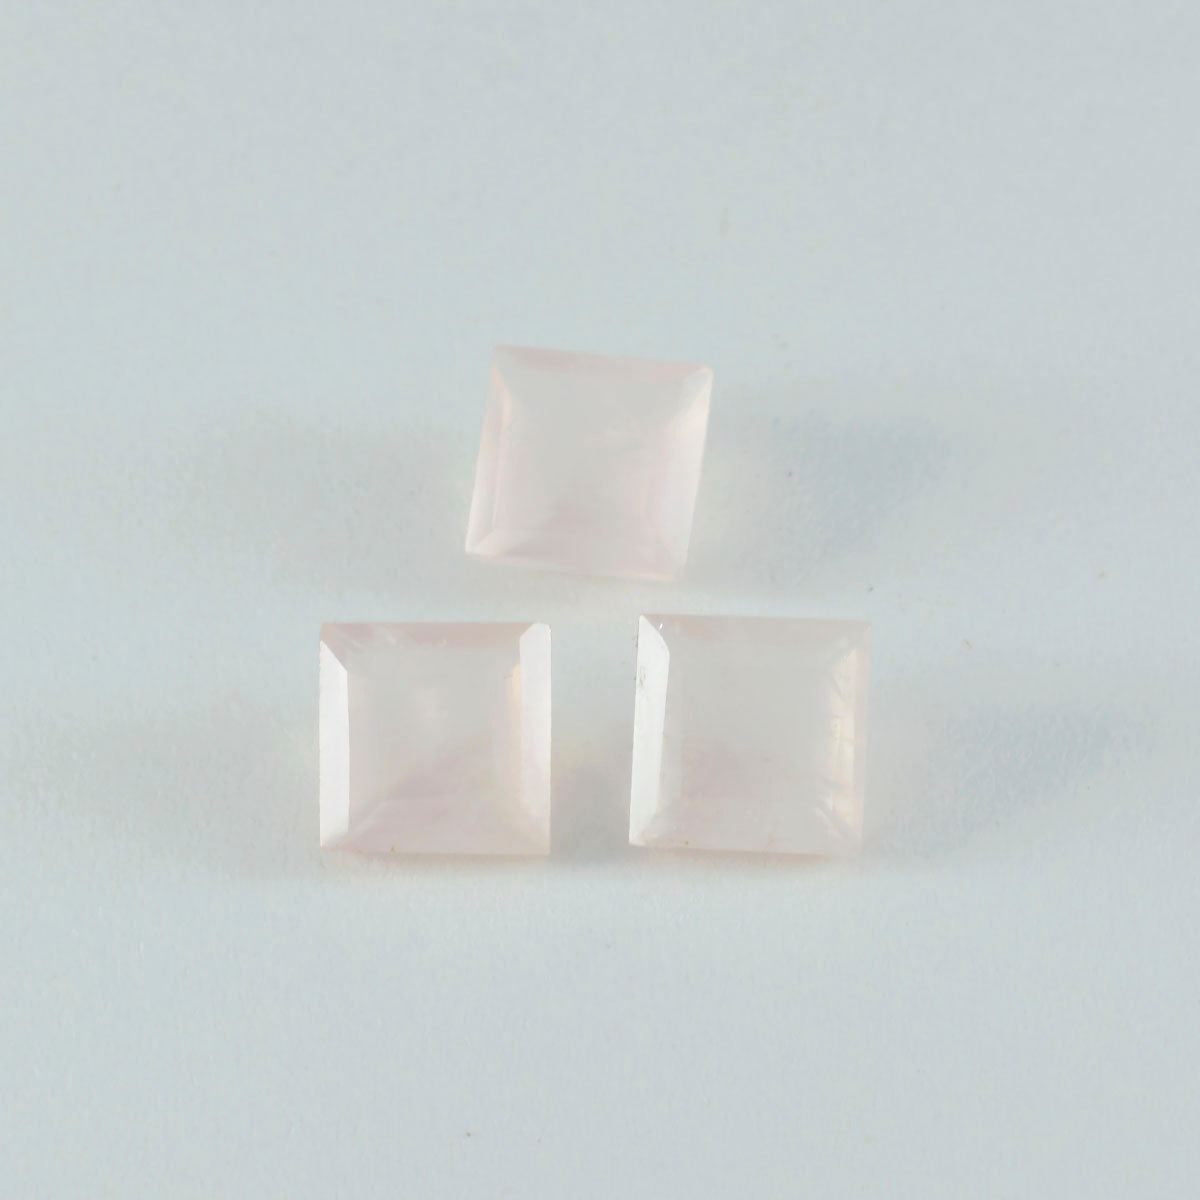 riyogems 1pc quartz rose à facettes 9x9 mm forme carrée pierre précieuse de qualité fantastique